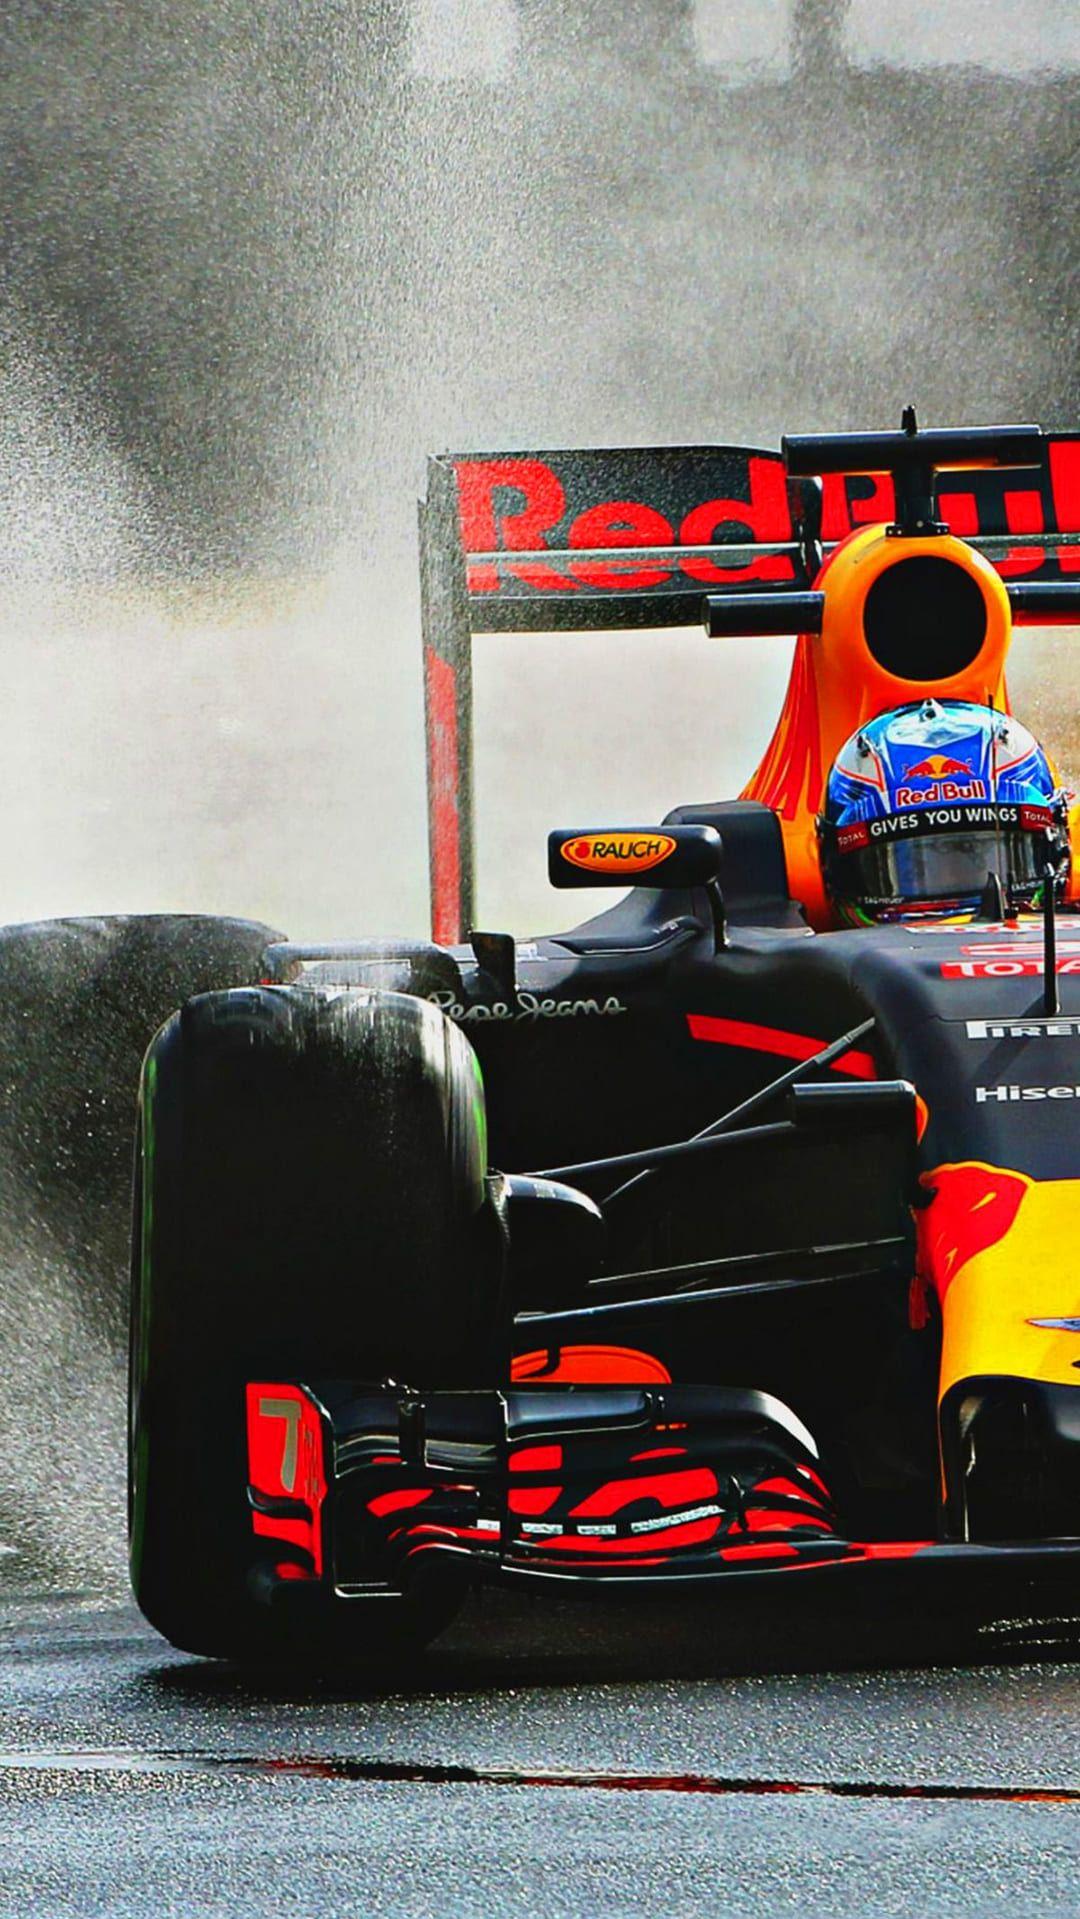 Red Bull Racing Wallpaper iXpap Red bull racing Racing F1 racing